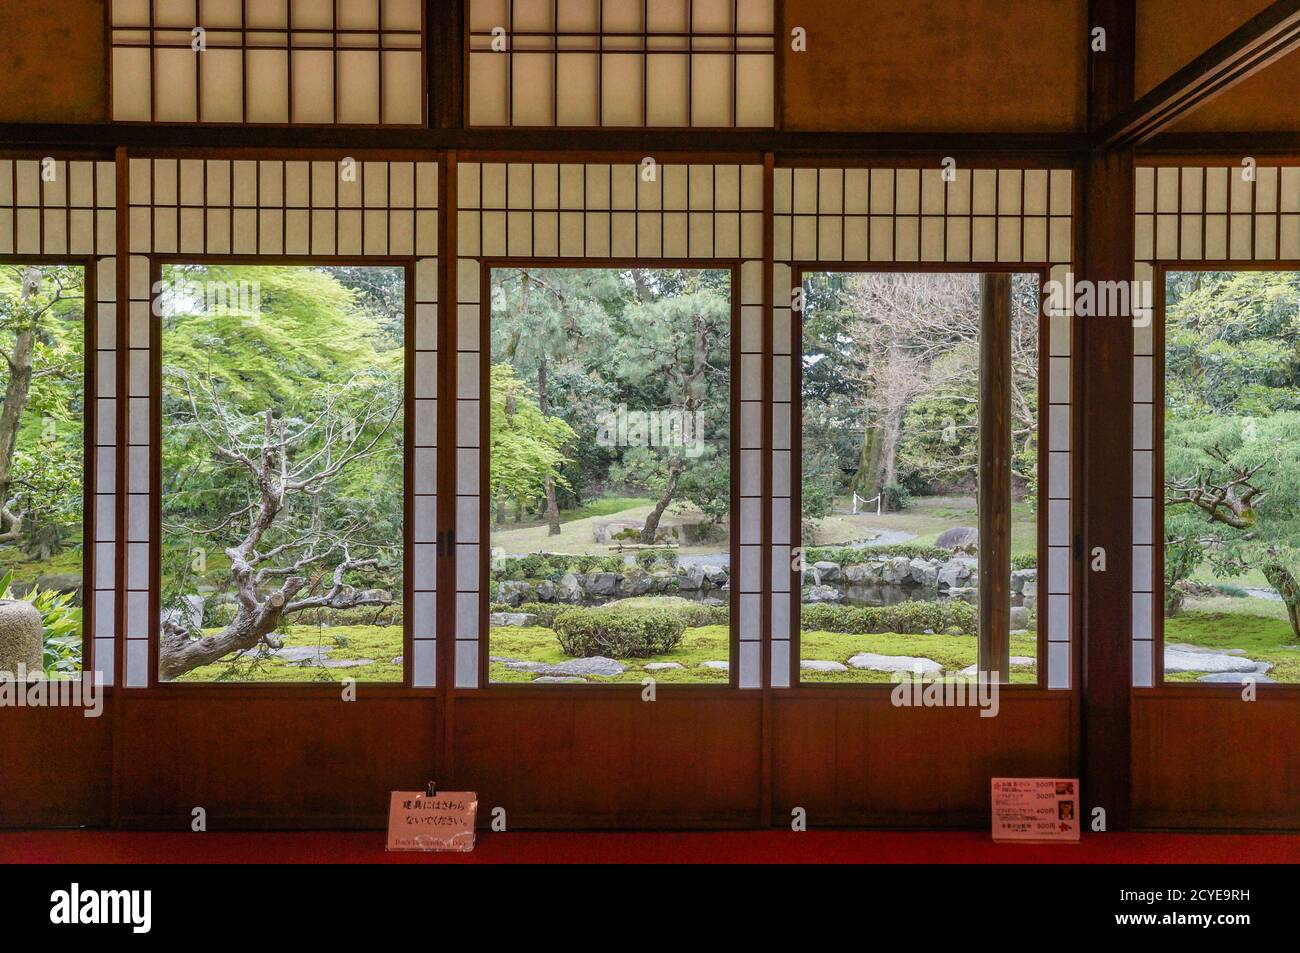 Former Mitsui Family Shimogamo Villa in Kyoto, Japan Stock Photo